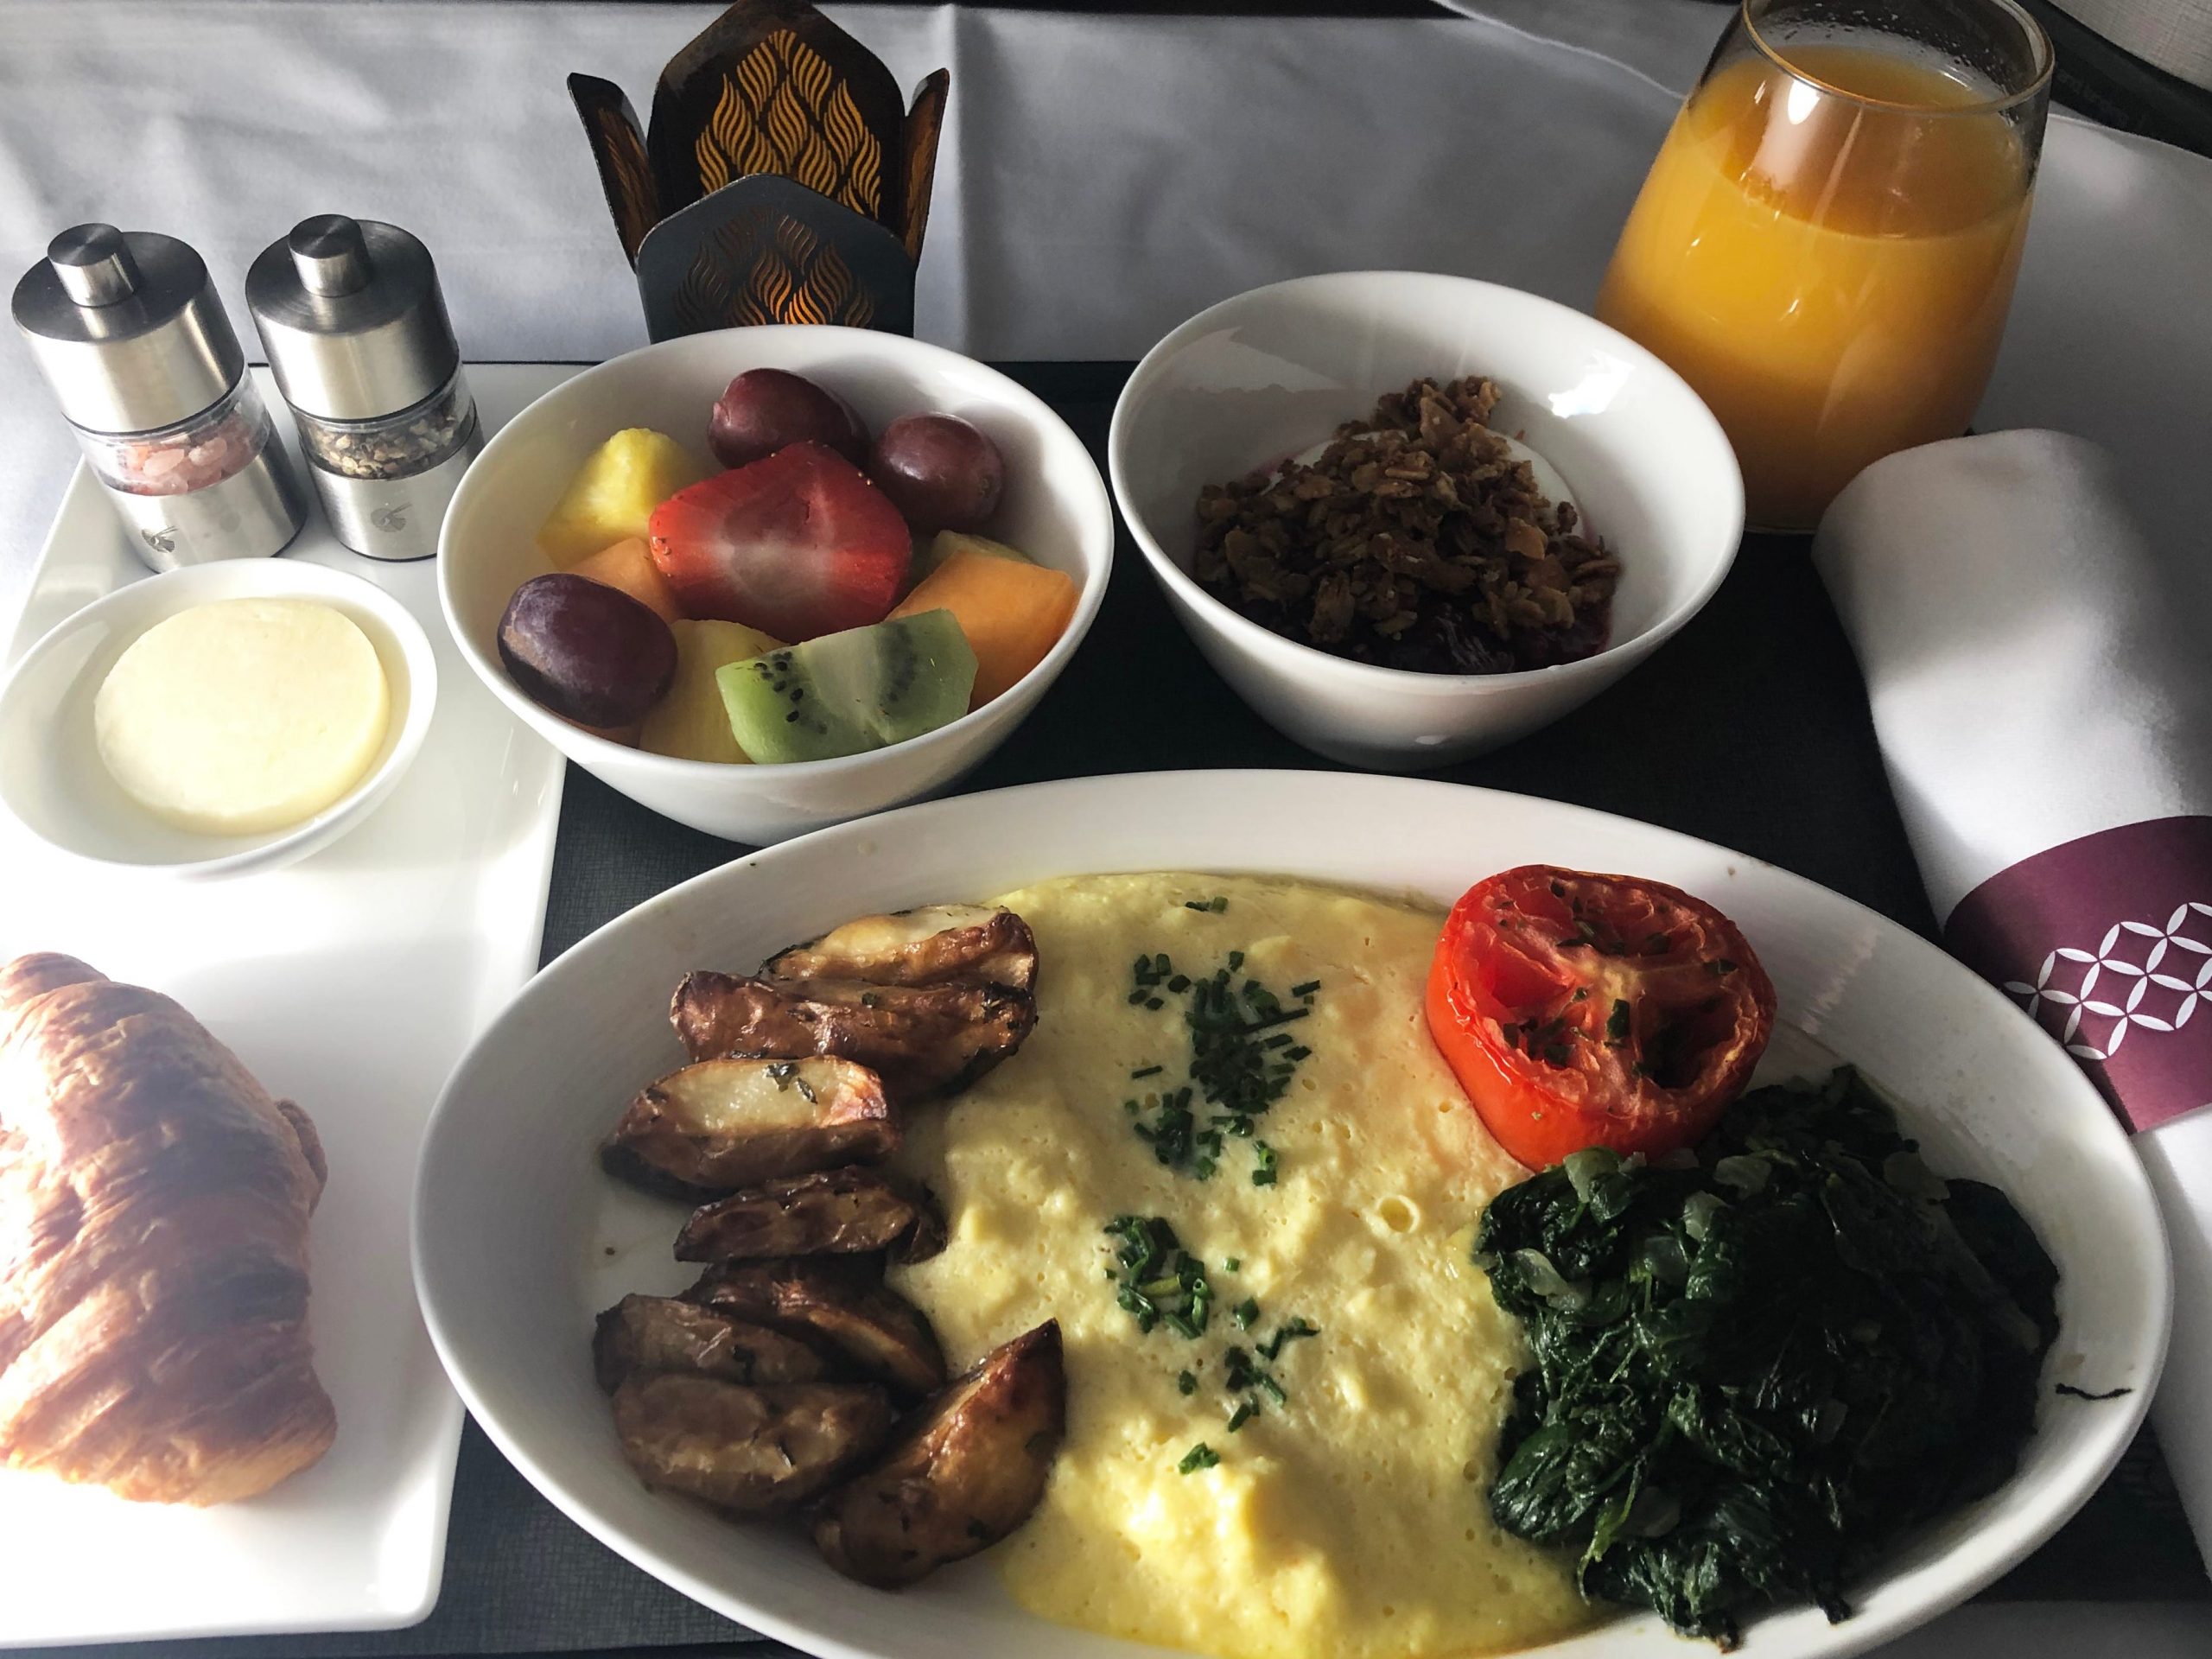 Breakfast on airplane